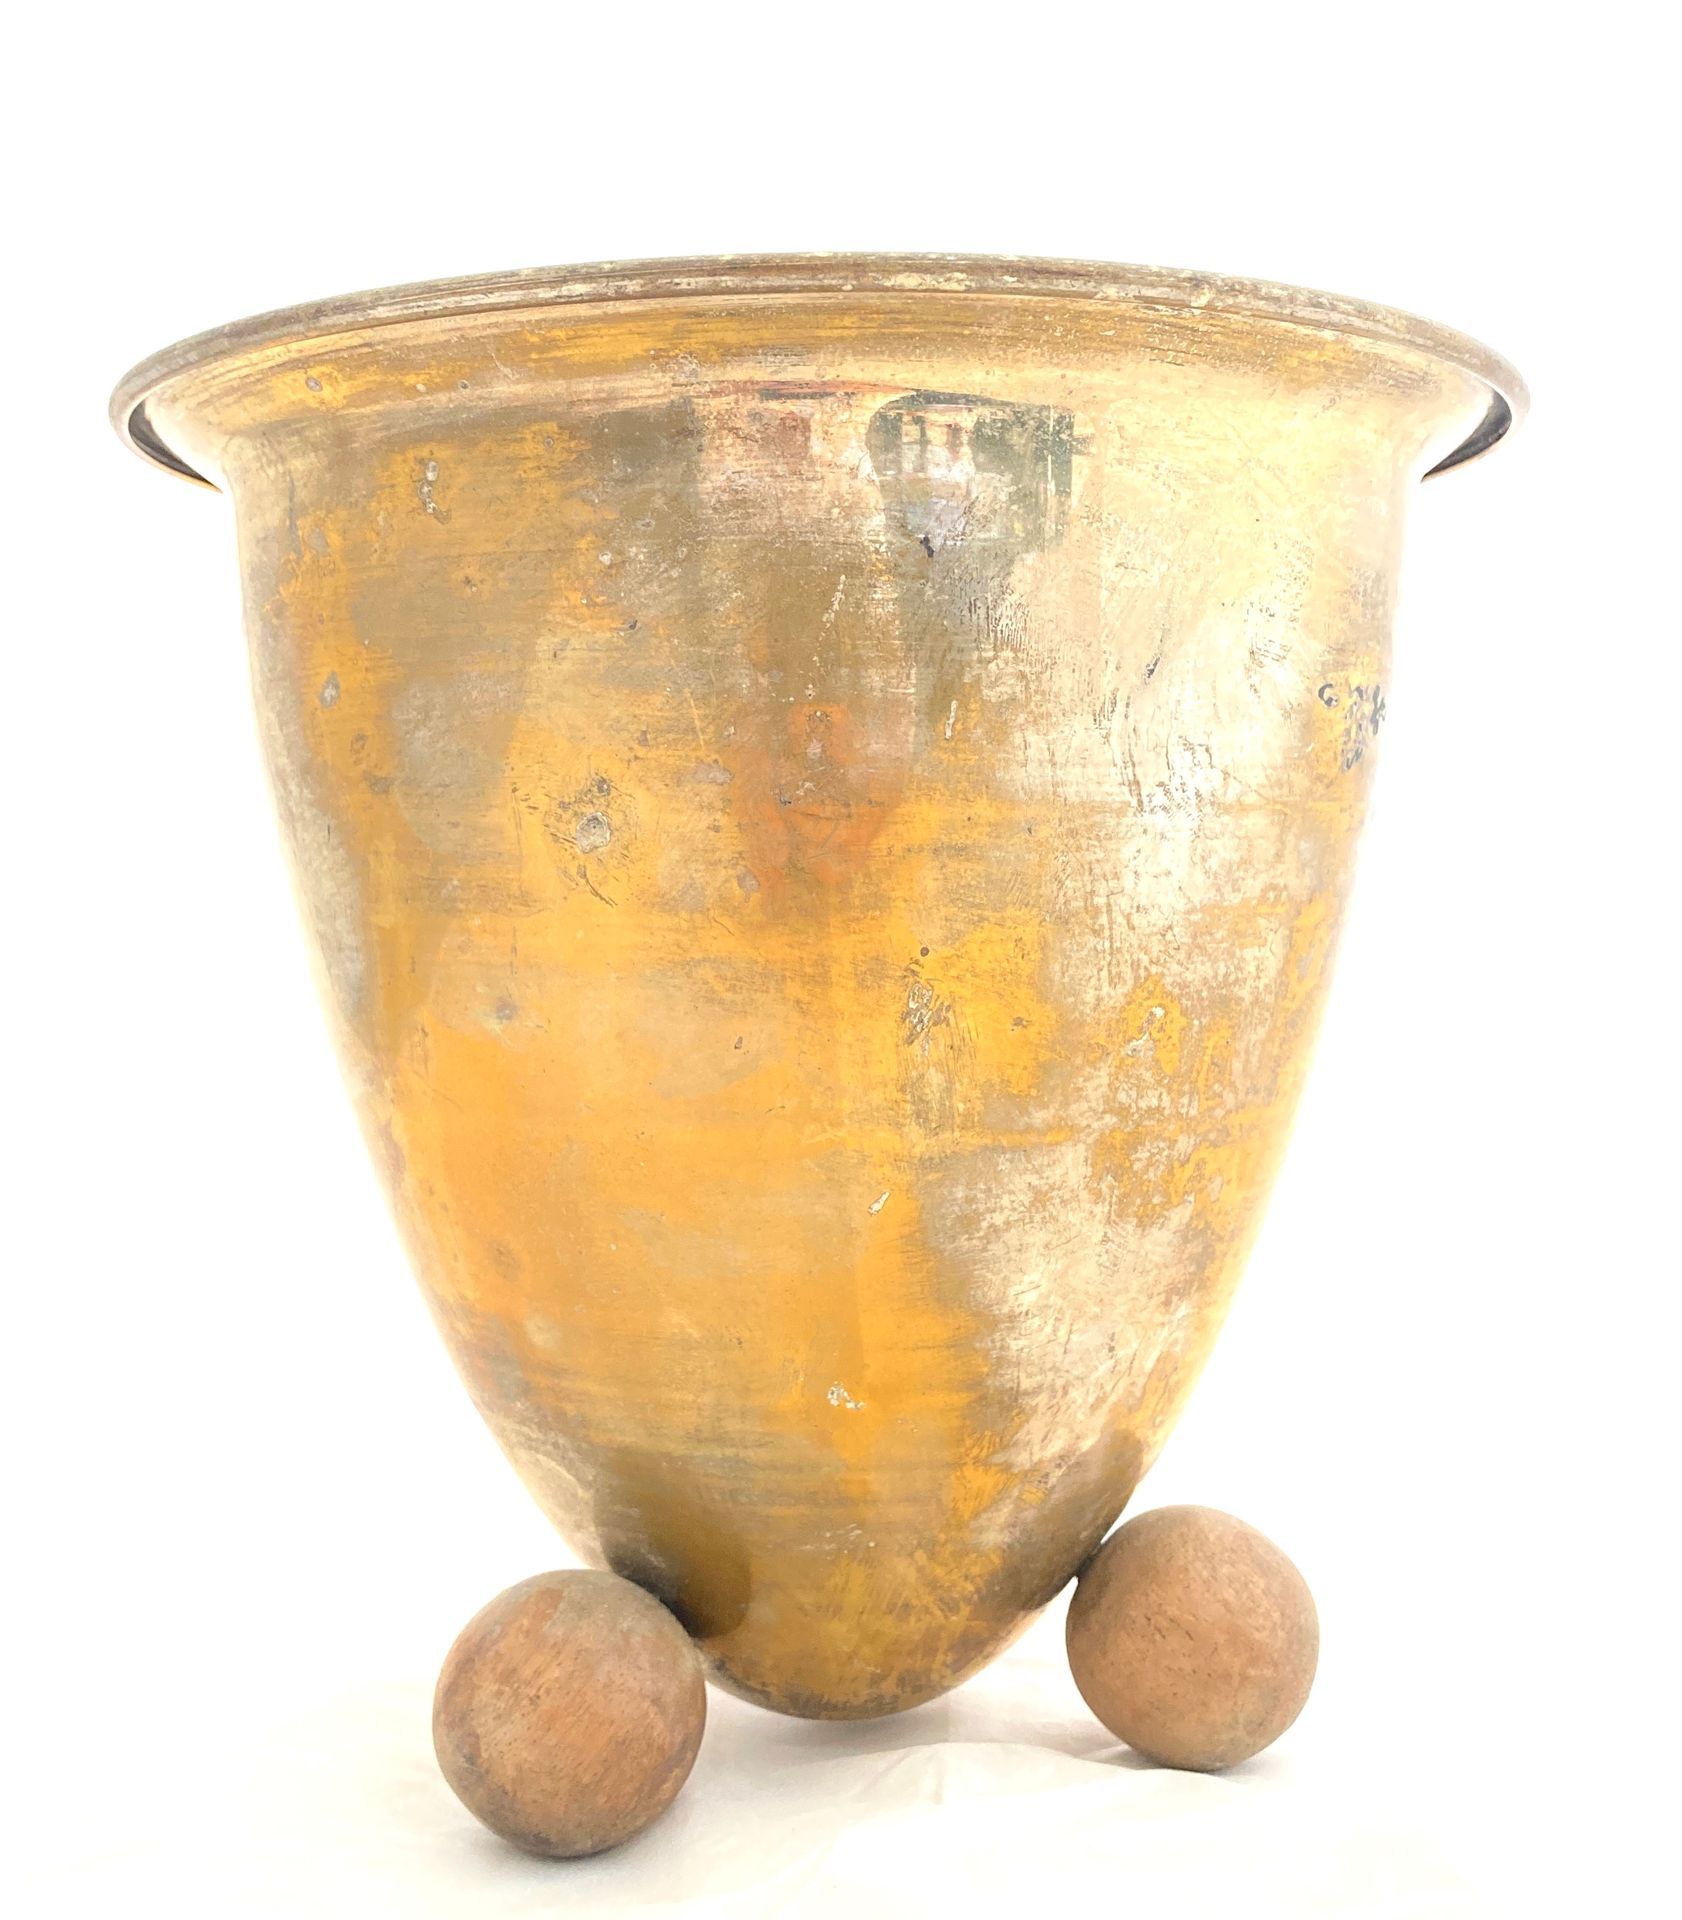 Null 一个镀金的金属截顶锥状香槟印章，放在三个天然木球上。

1930-40年代的作品。

高21,2厘米。直径21.5厘米。

镀金的部分已经丢失。